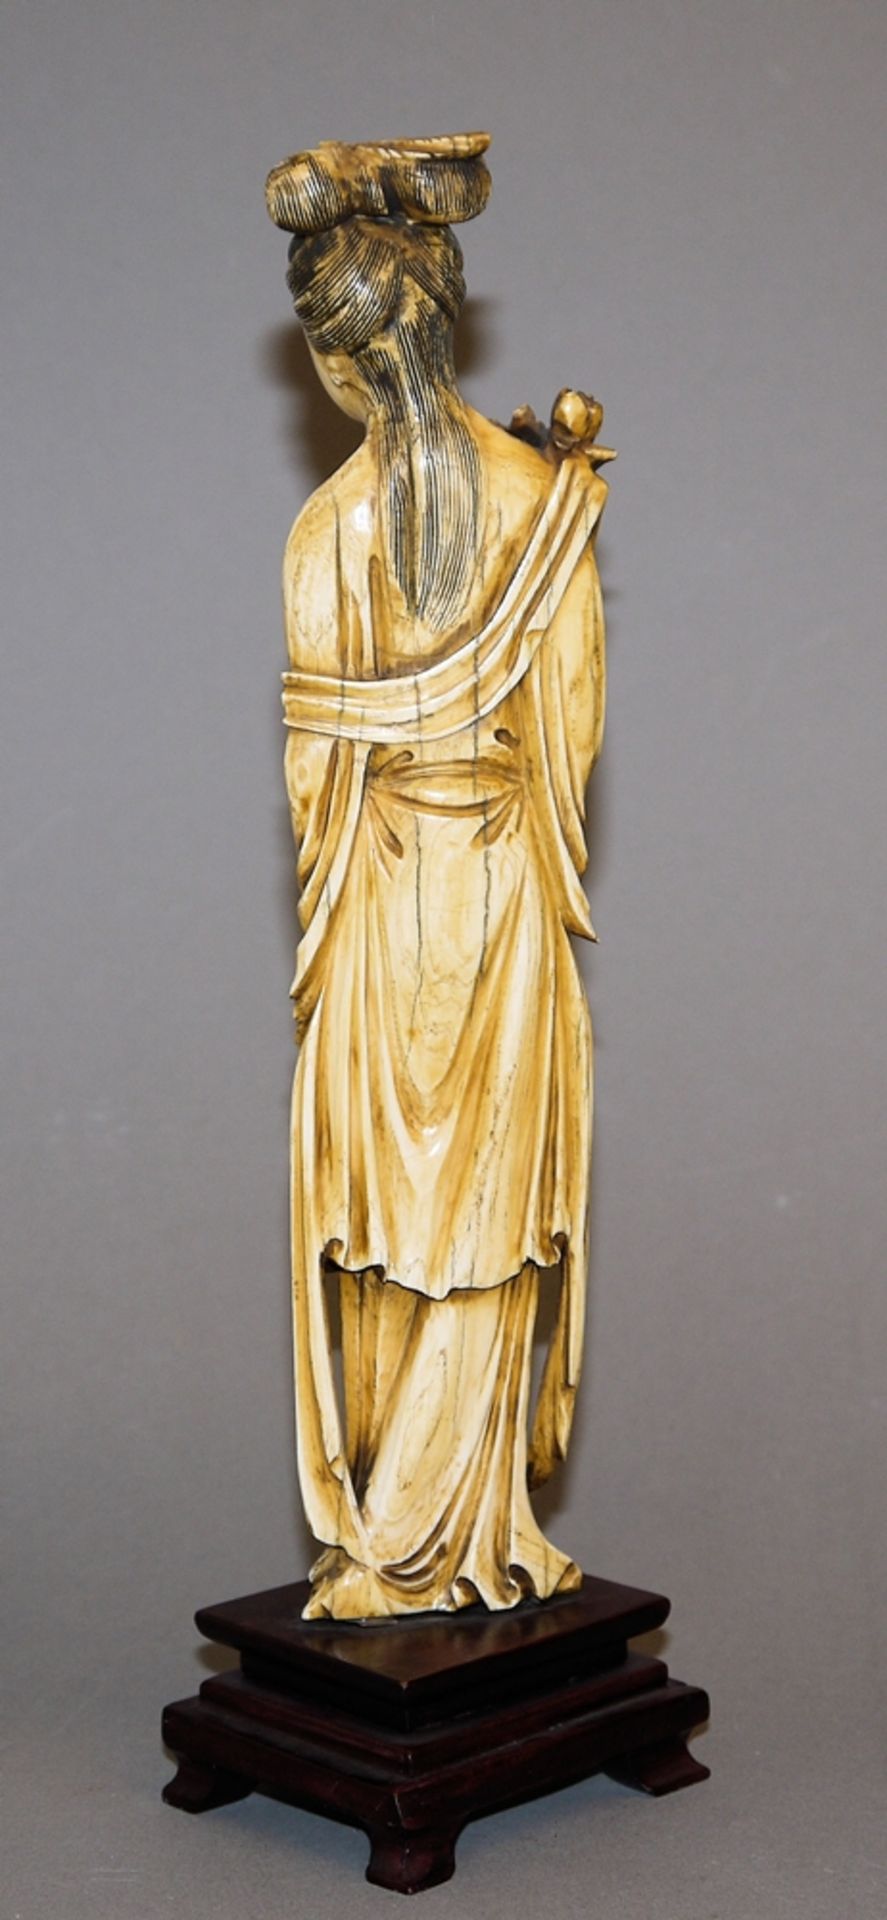 Himmlische Dame mit Päonien, chinesische Elfenbeinschnitzerei, 20. Jh.< - Bild 2 aus 2